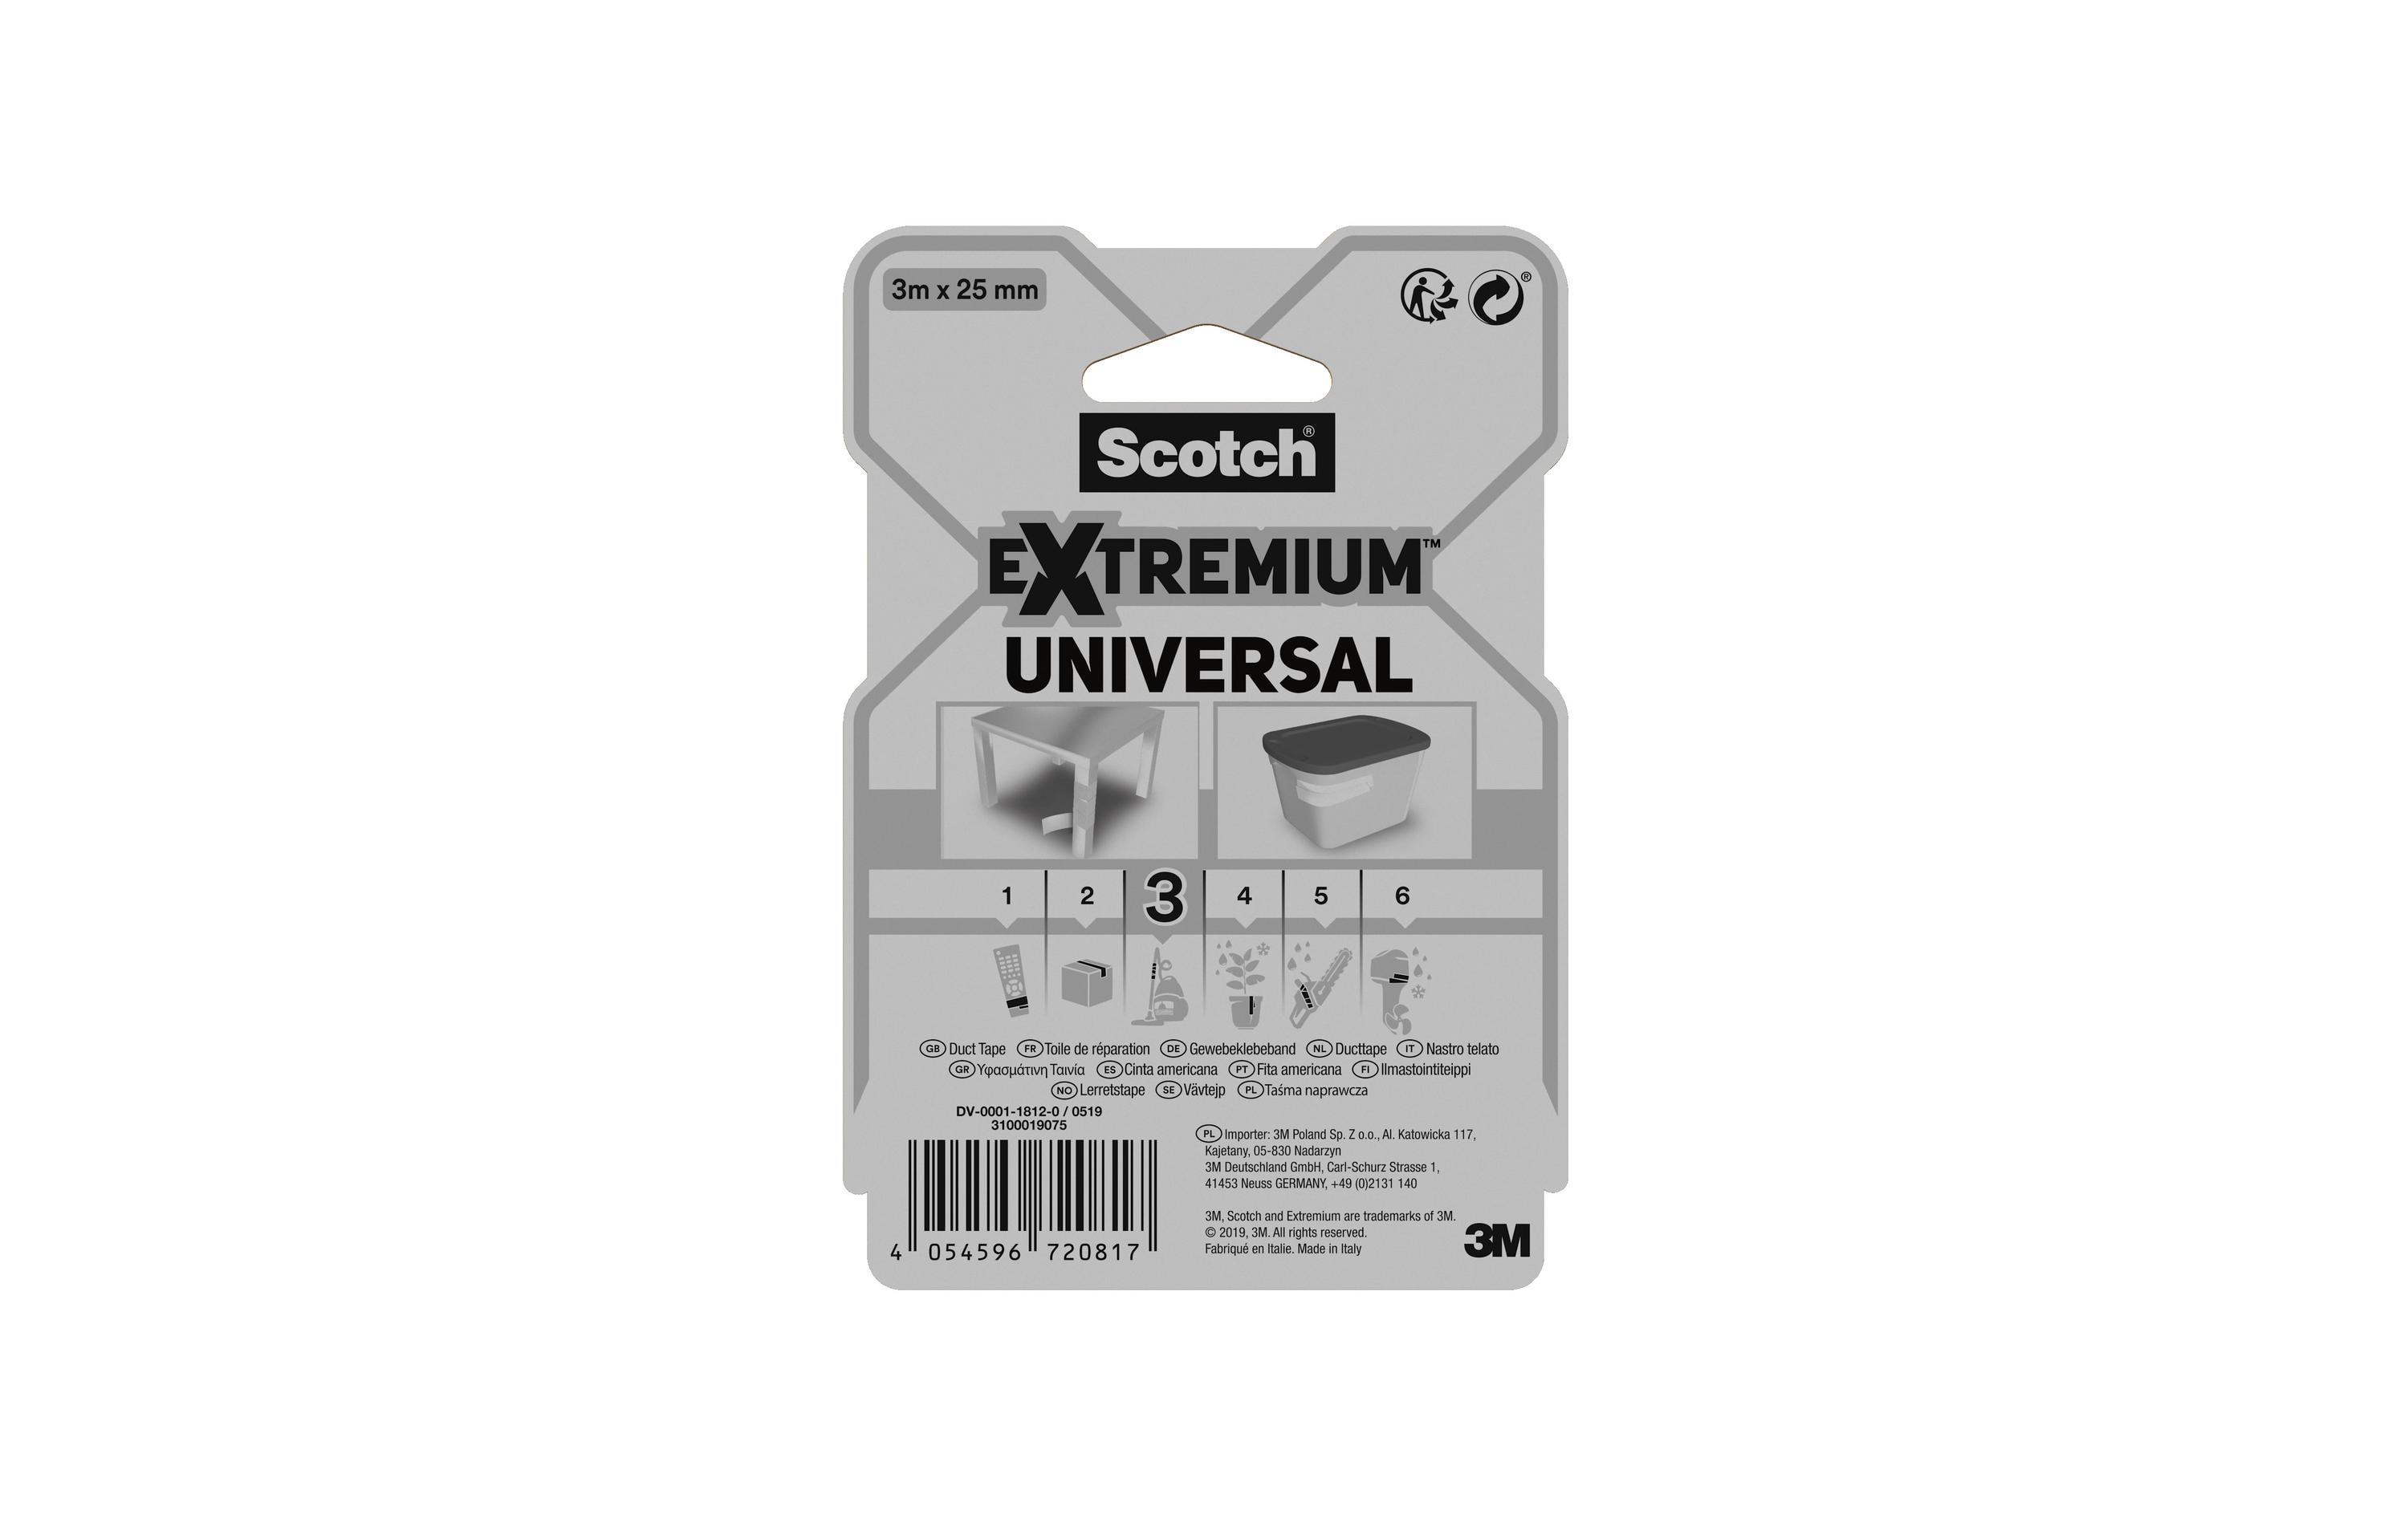 Scotch Klebeband Extremium Universal, 25 mm x 3 m, 1 Rolle, Weiss